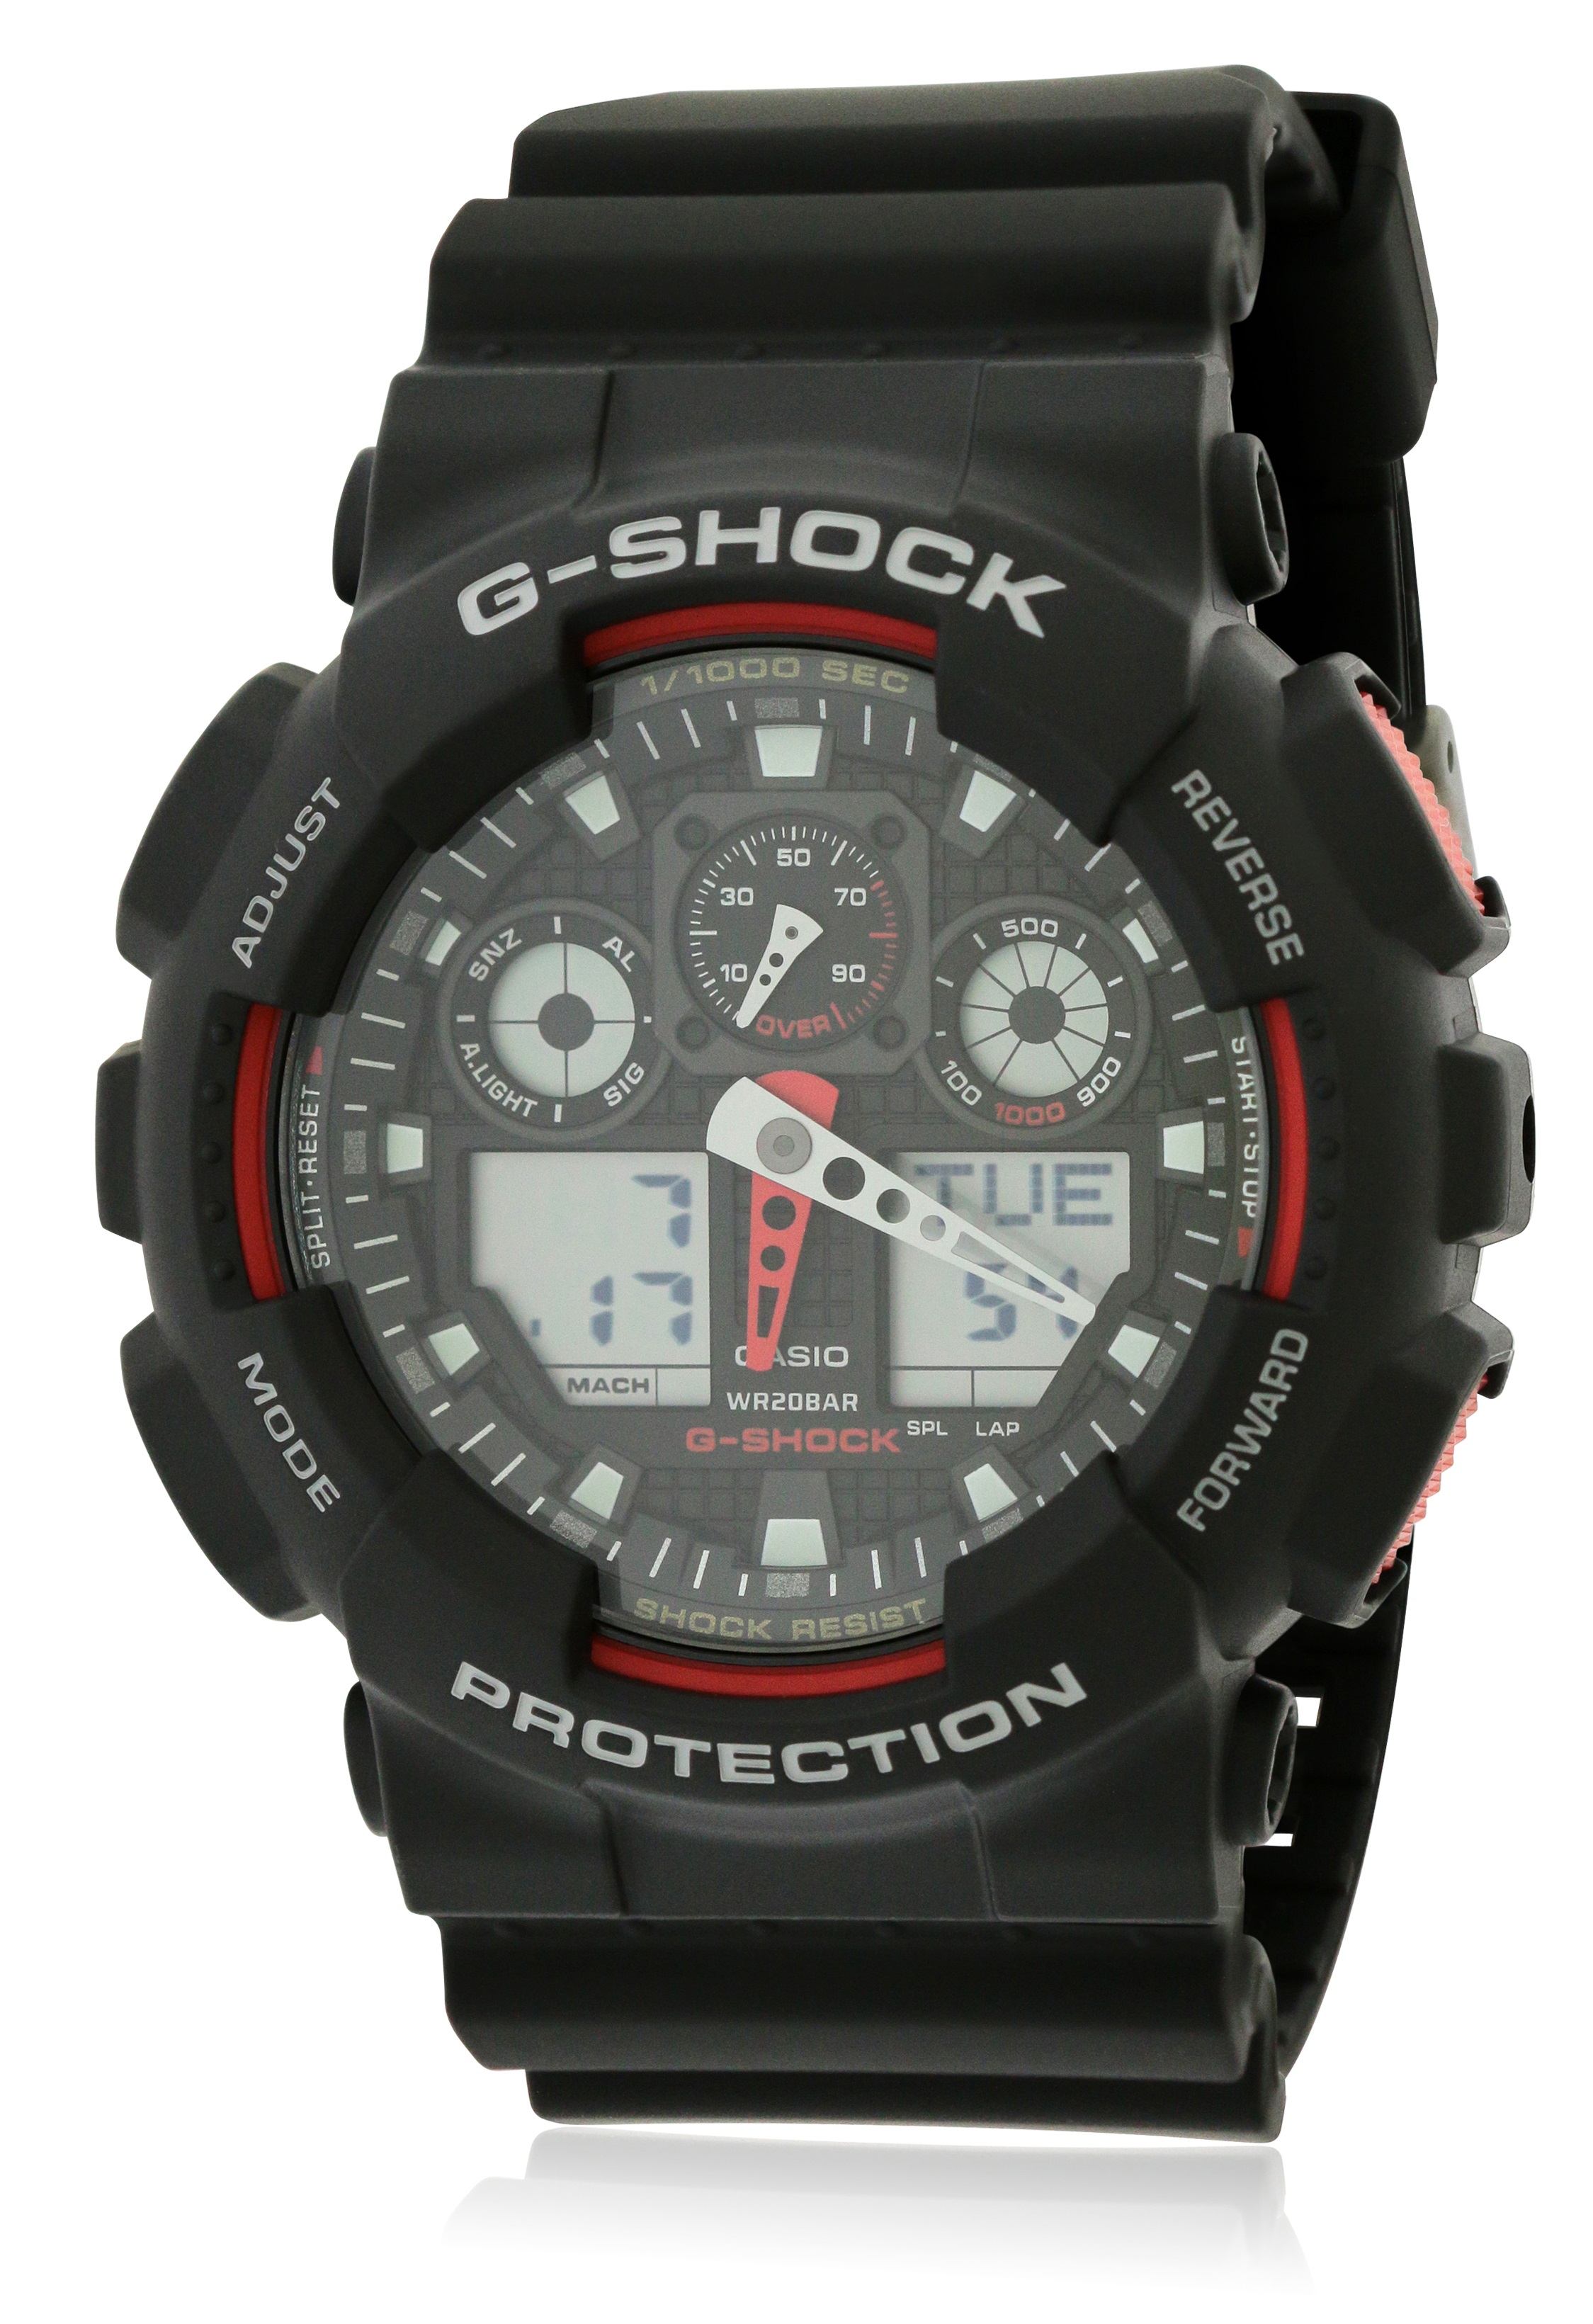 Casio G-Shock Analog Digital Black XL Watch GA100-1A4 GA-100-1A4CR